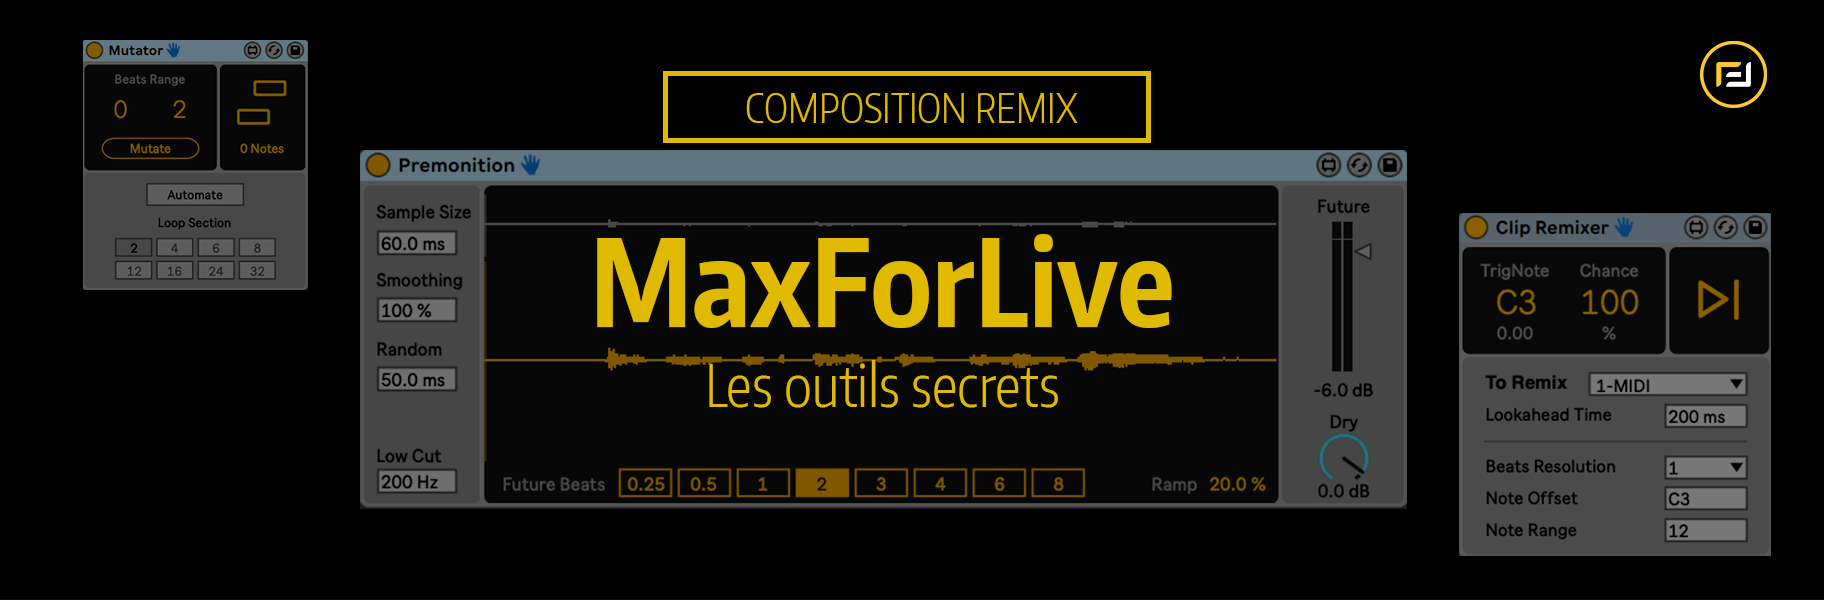 Tutoriel Ableton Live - Les outils secrets de maxForLive